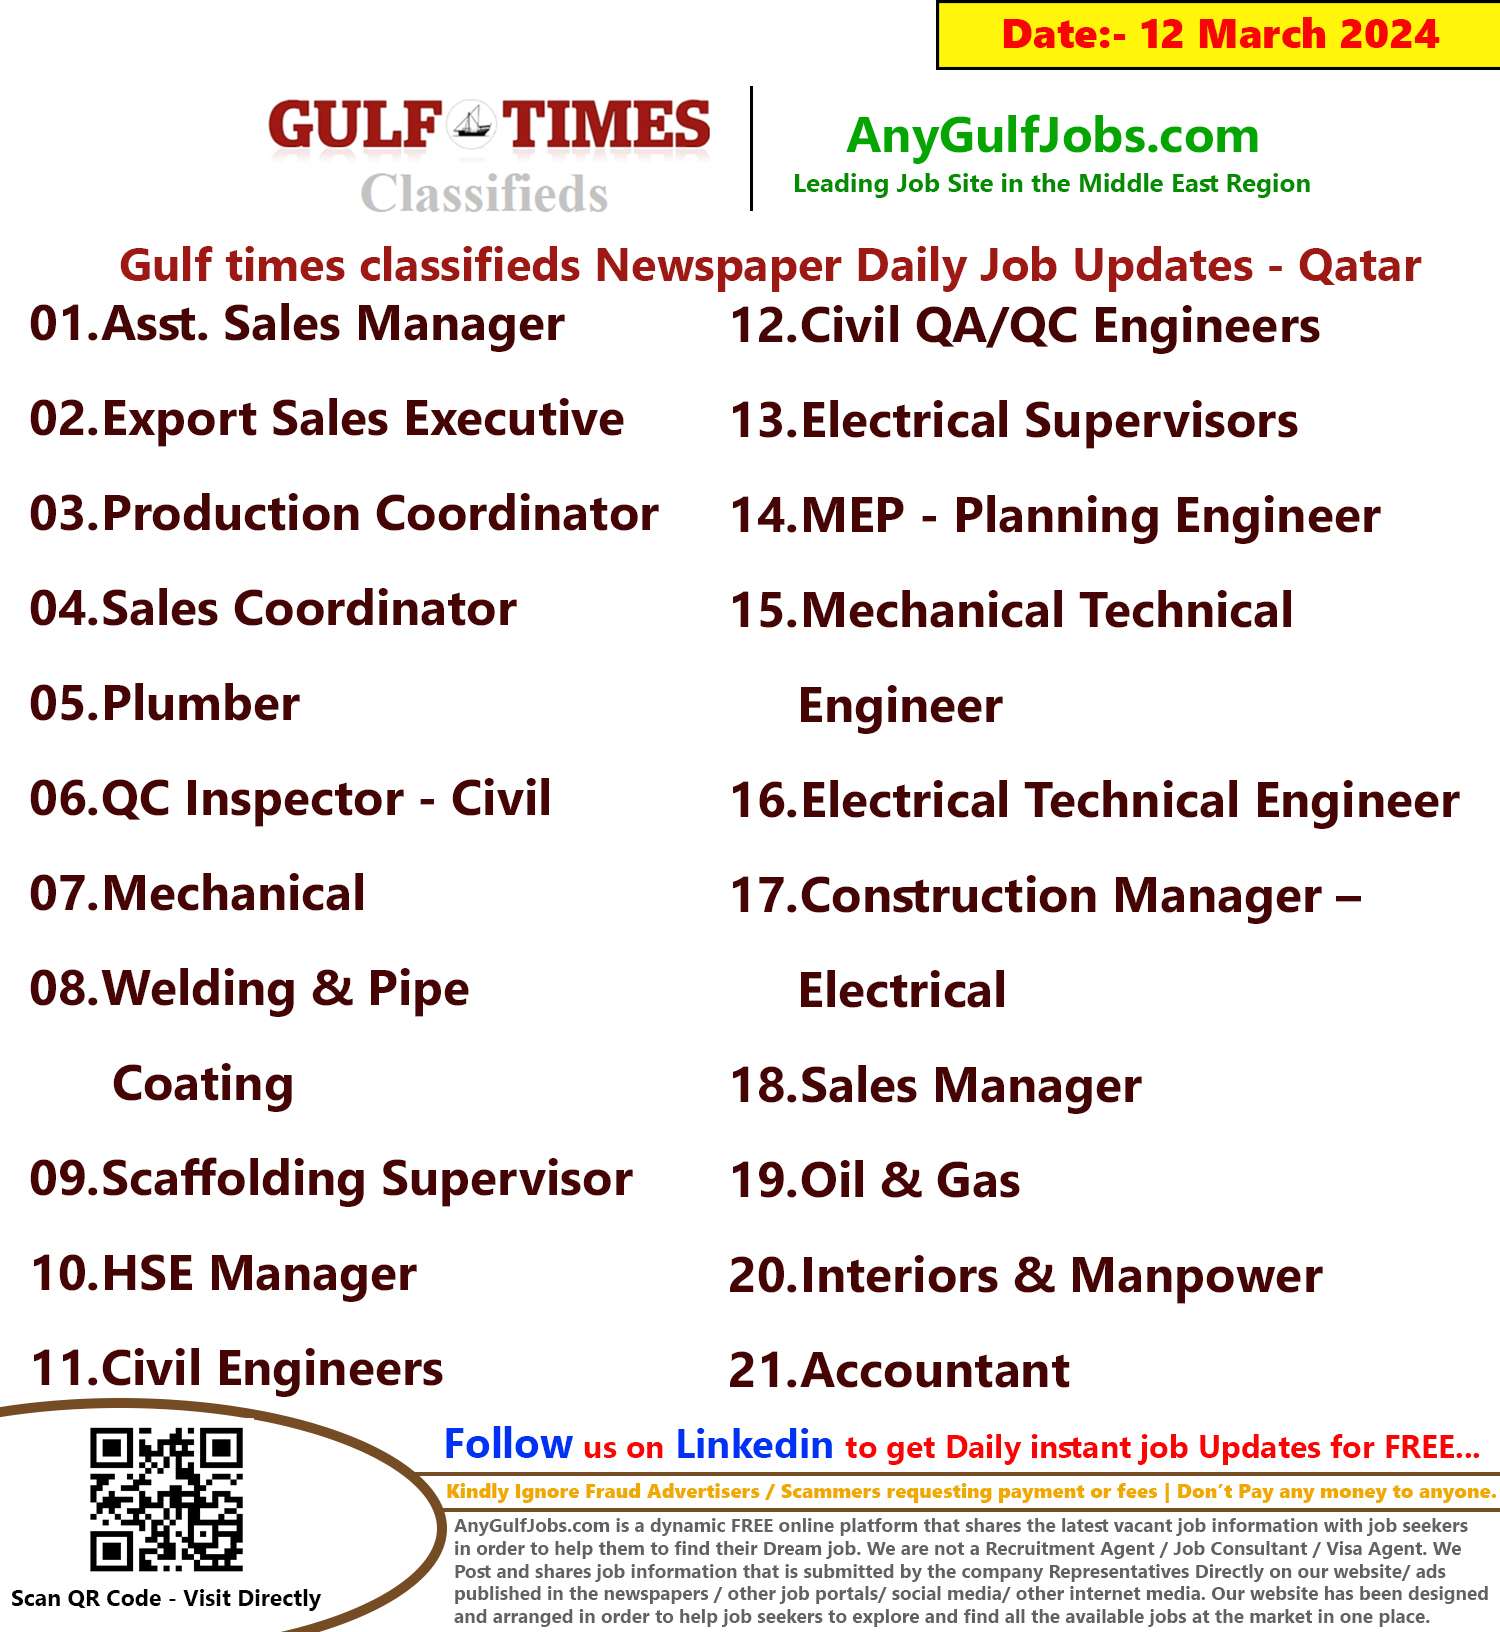 Gulf Times Classifieds Job Vacancies Qatar - 12 March 2024